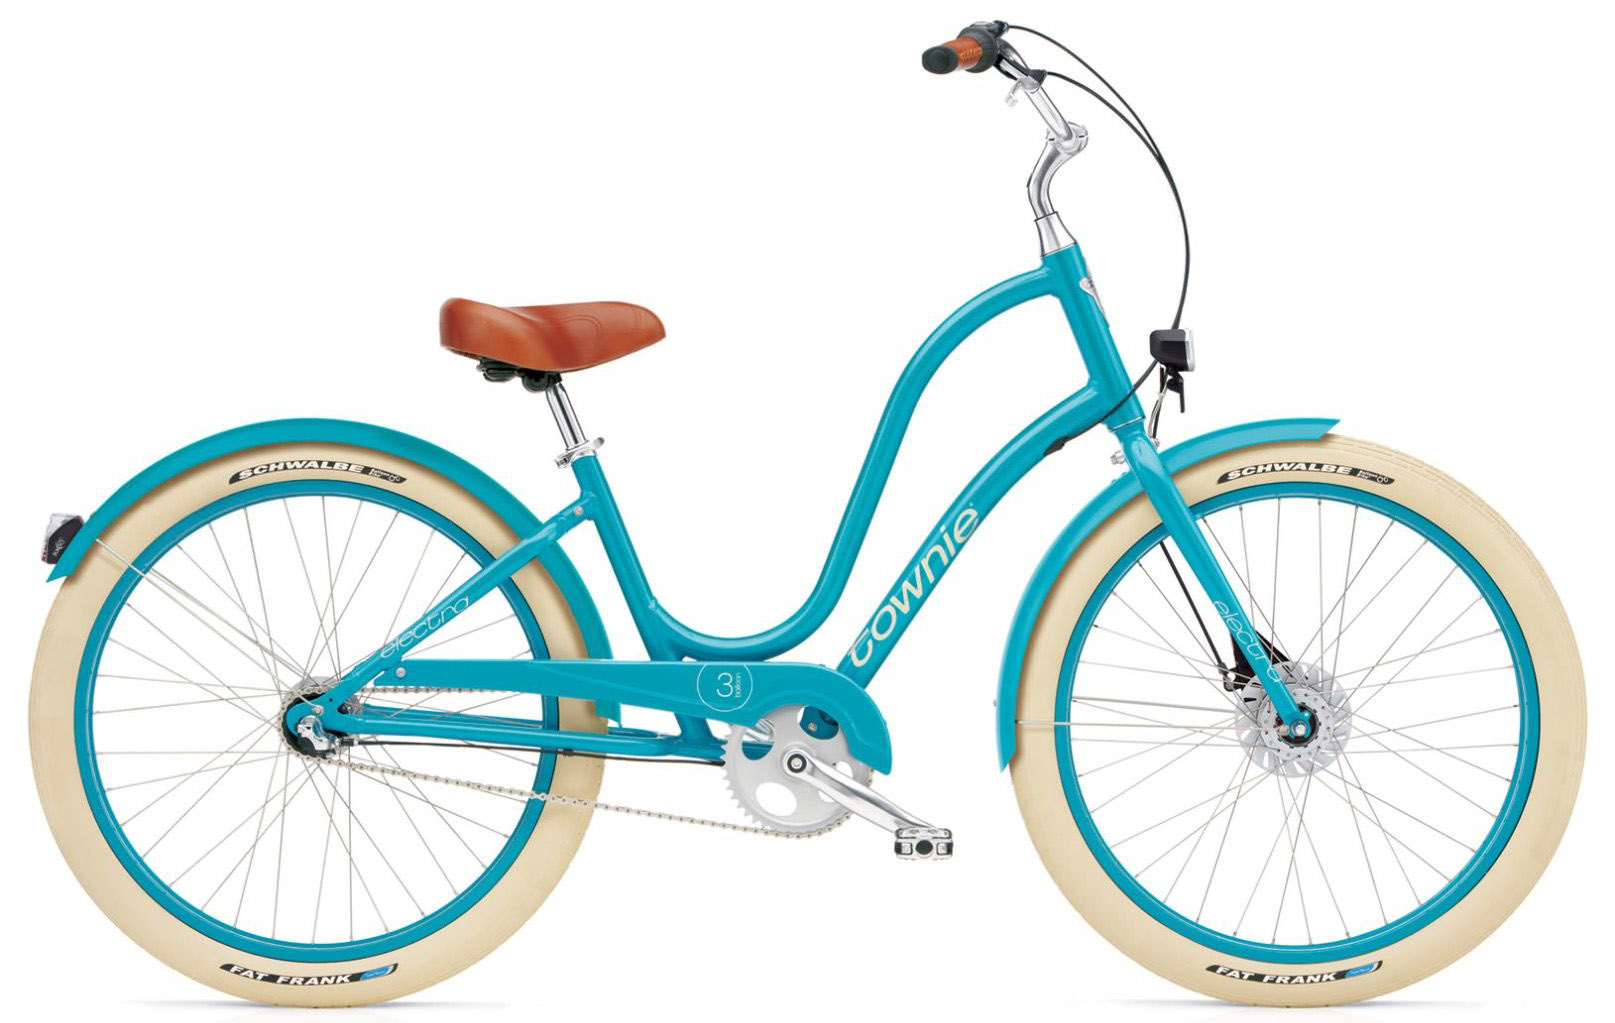  Отзывы о Женском велосипеде Electra Townie Balloon 3i EQ Ladies 2020